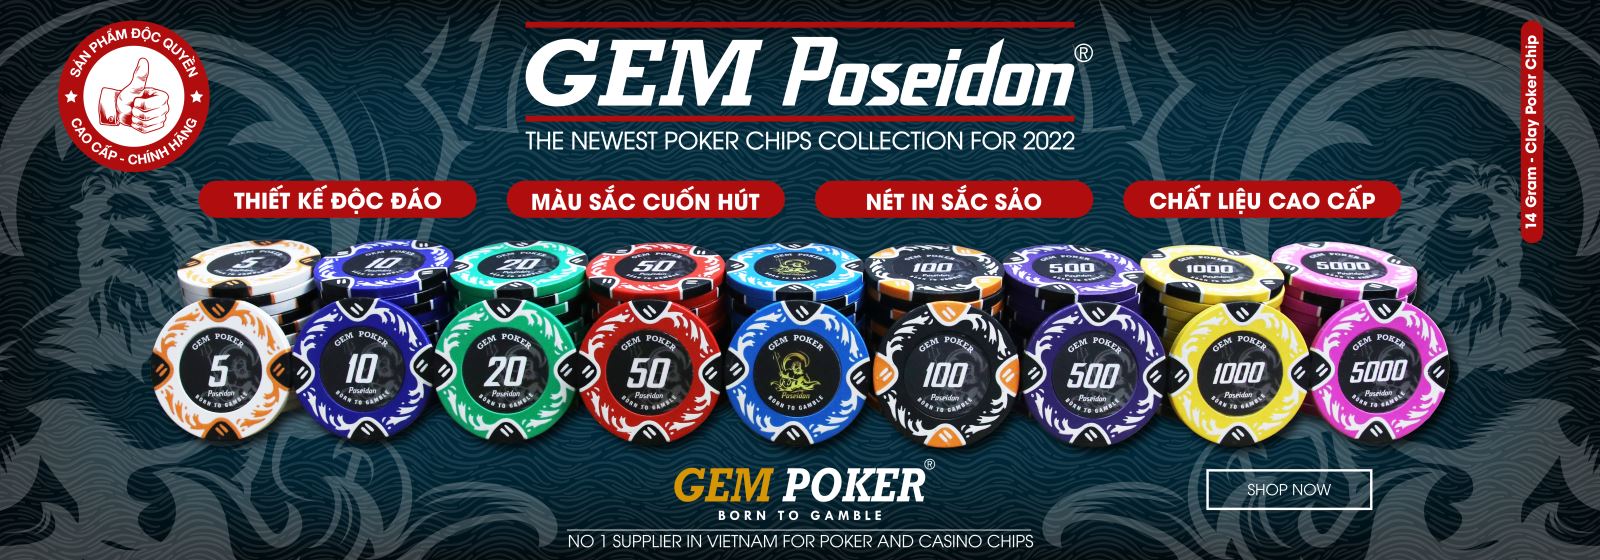 200 Chip Poker Clay POSEIDON Ver 2.0 - 2022